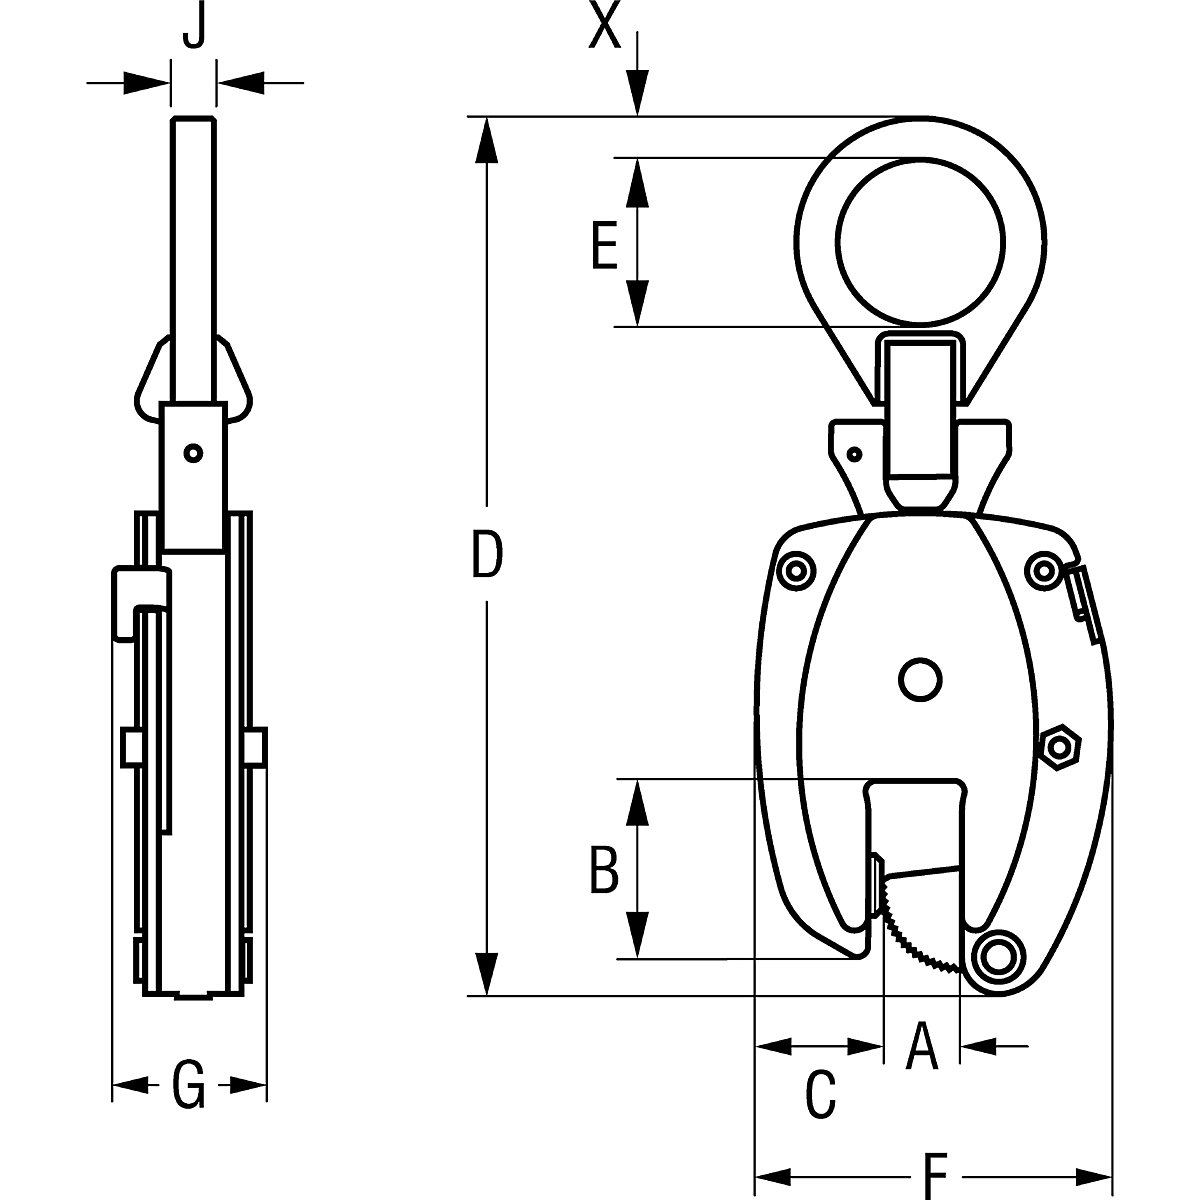 Clemă de suspensie model KL, utilizare pe verticală – Pfeifer (Imagine produs 4)-3